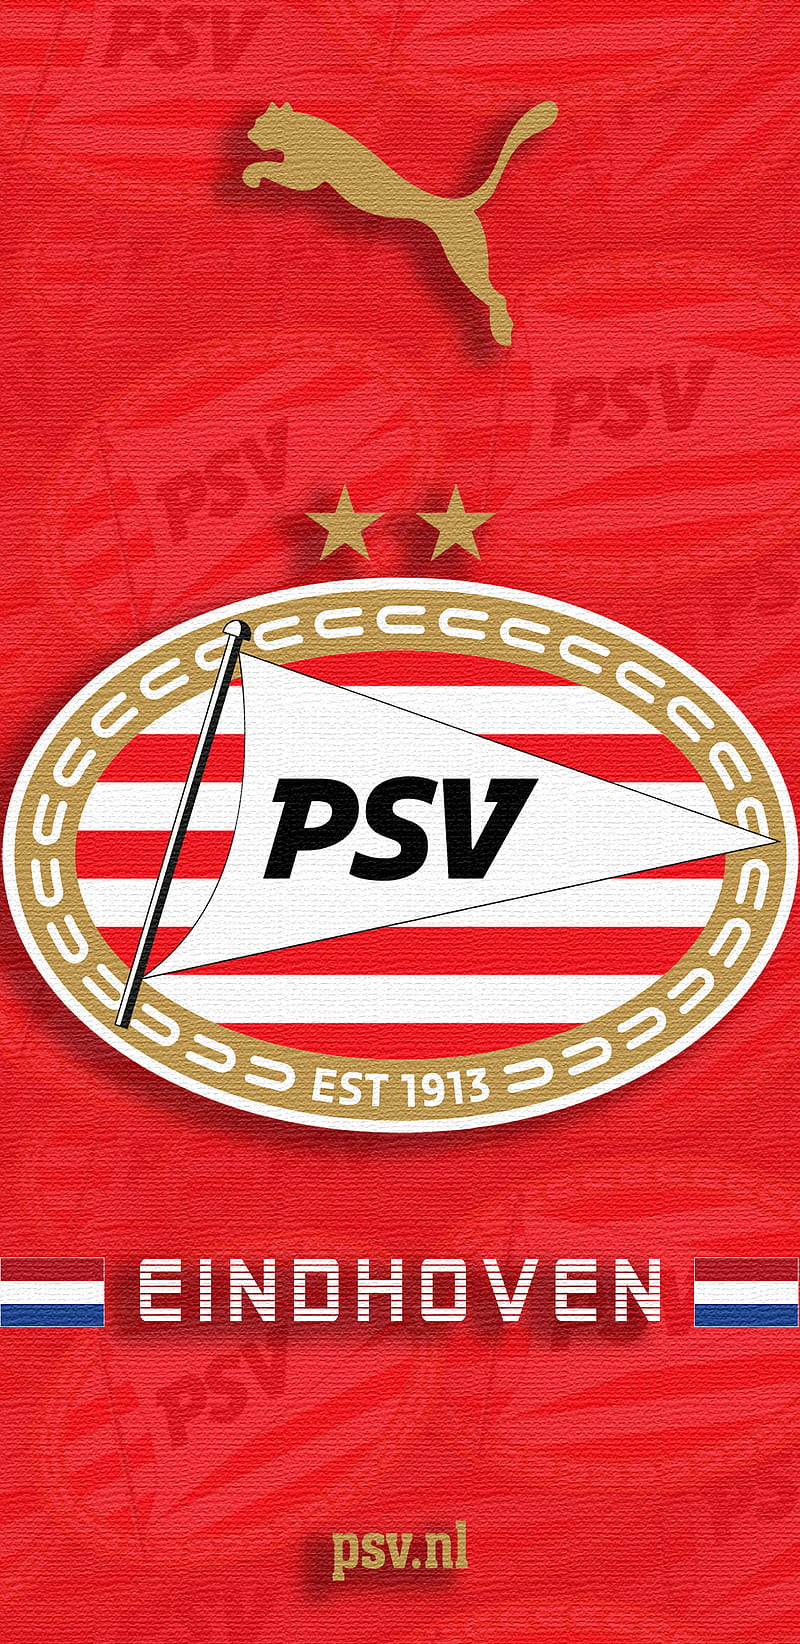 PSV EINDHOVEN, boeren, eredivisie, holland, knvb, philips sport vereniging, puma, rood witten, HD phone wallpaper